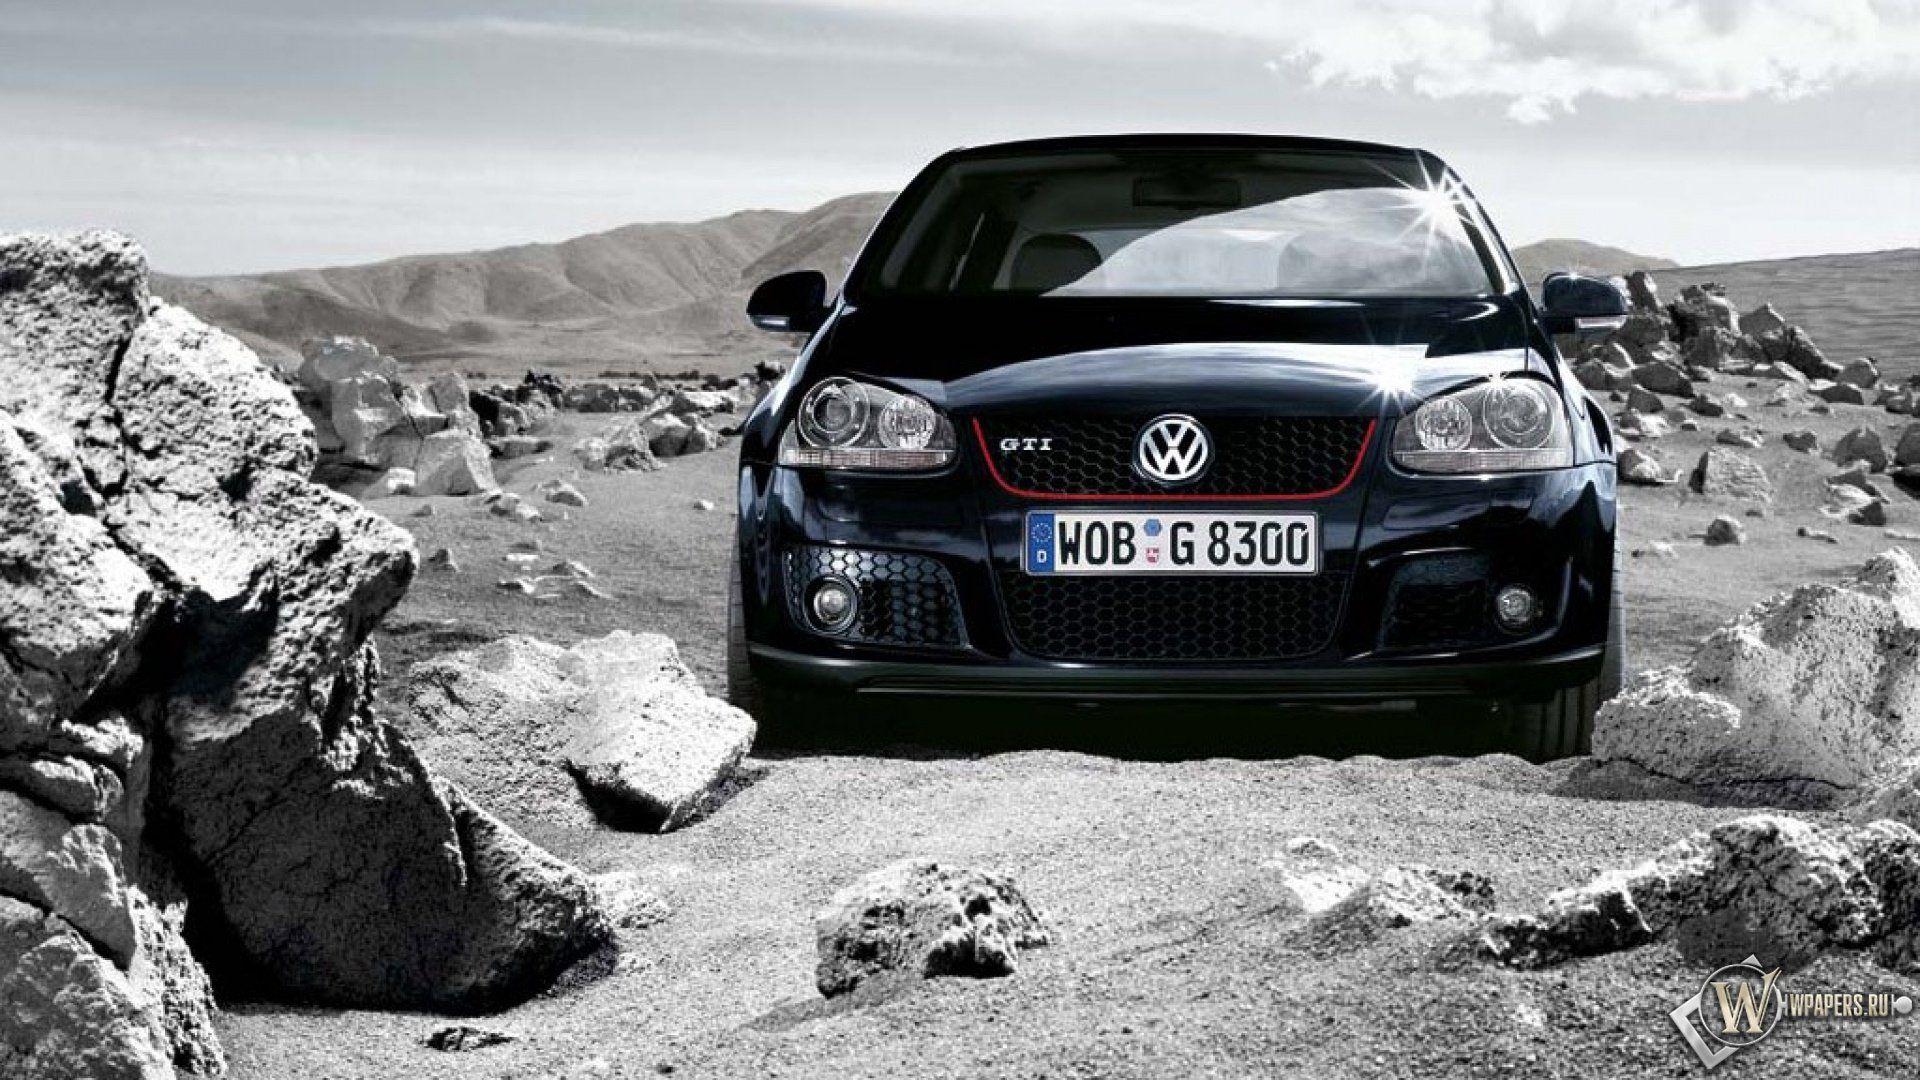 2012 BBM Volkswagen Golf V GTI tuning h wallpaper, 2560x1600, 139352